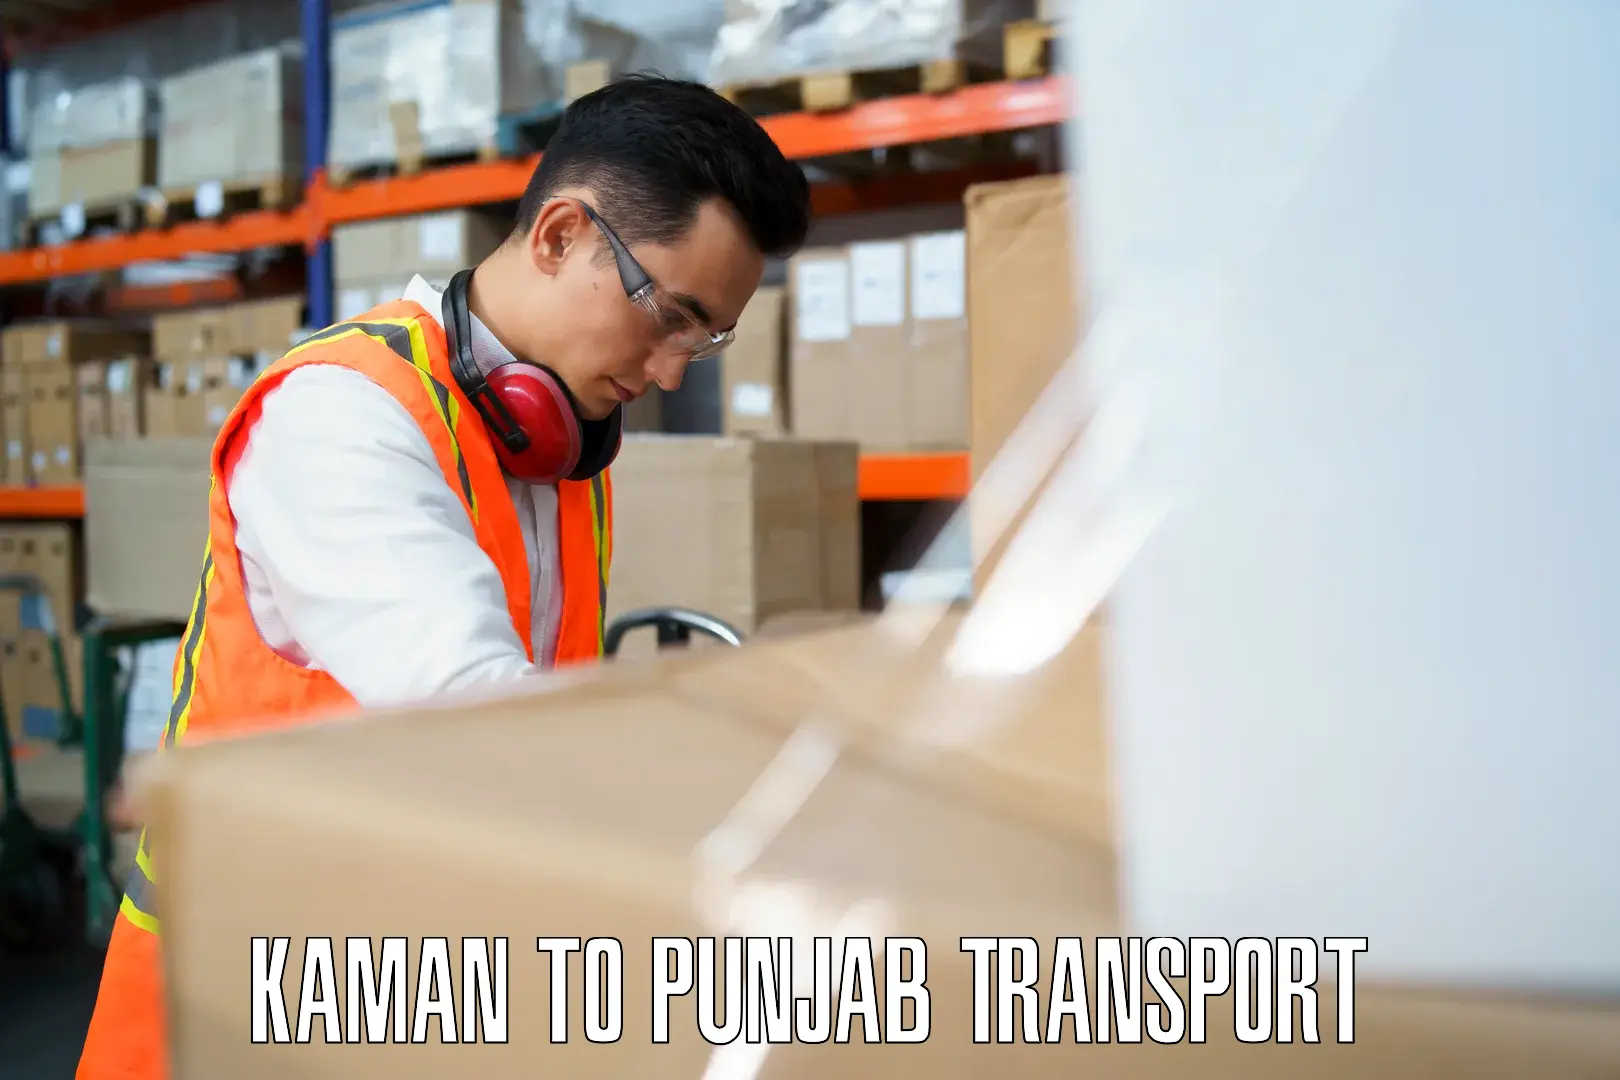 Furniture transport service Kaman to Dhuri